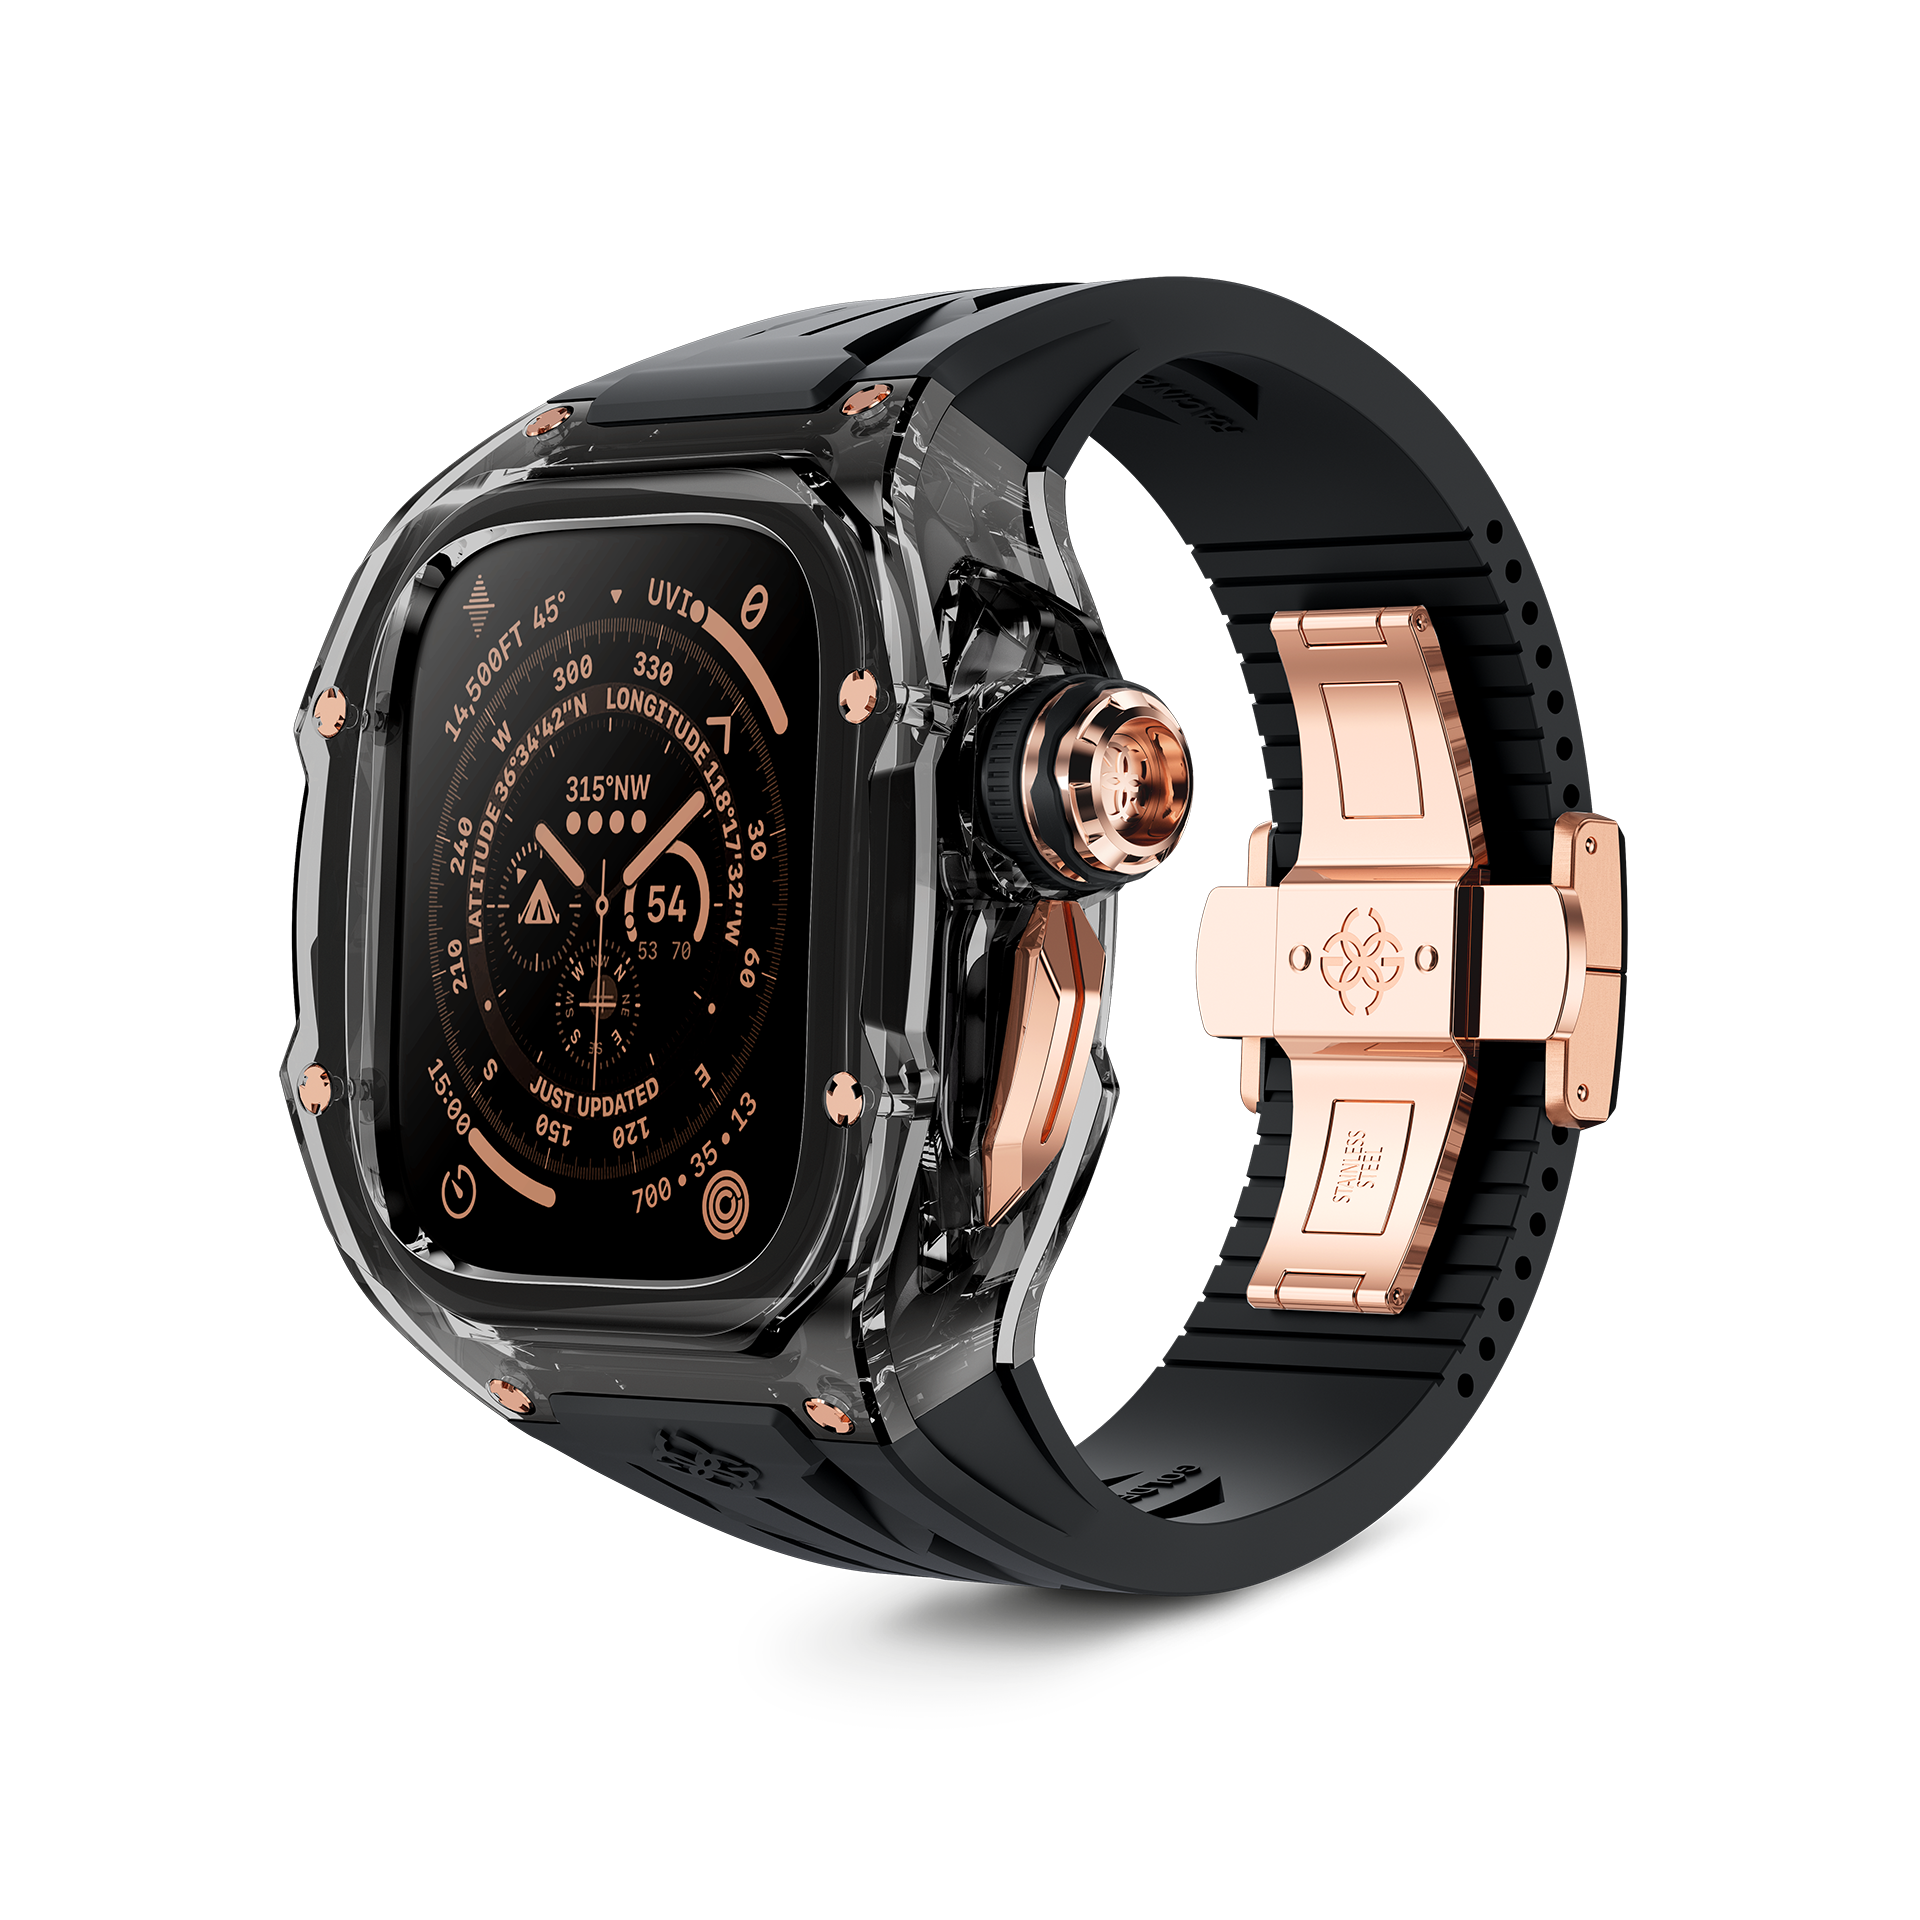 Apple Watch Case - RSTR49 - SMOKEY BLACK ROSE GOLD